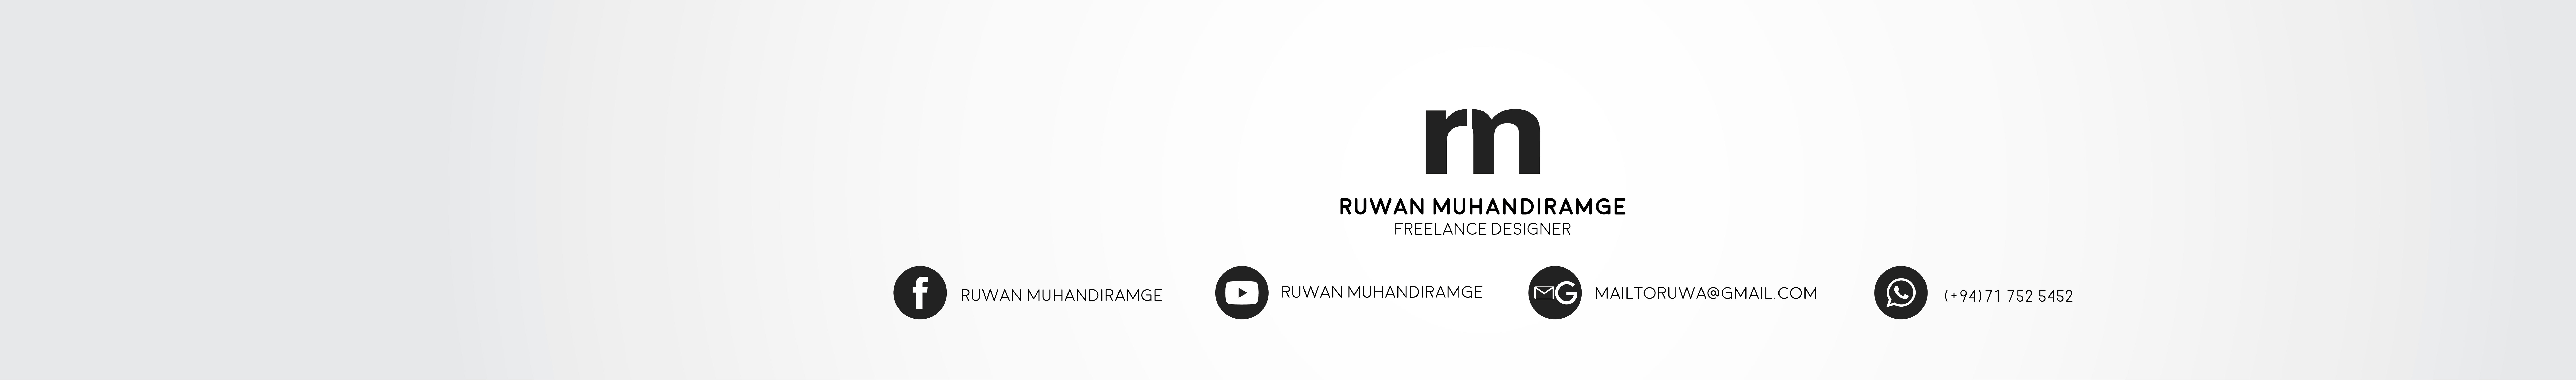 Profilbanneret til Ruwan Muhandiramge